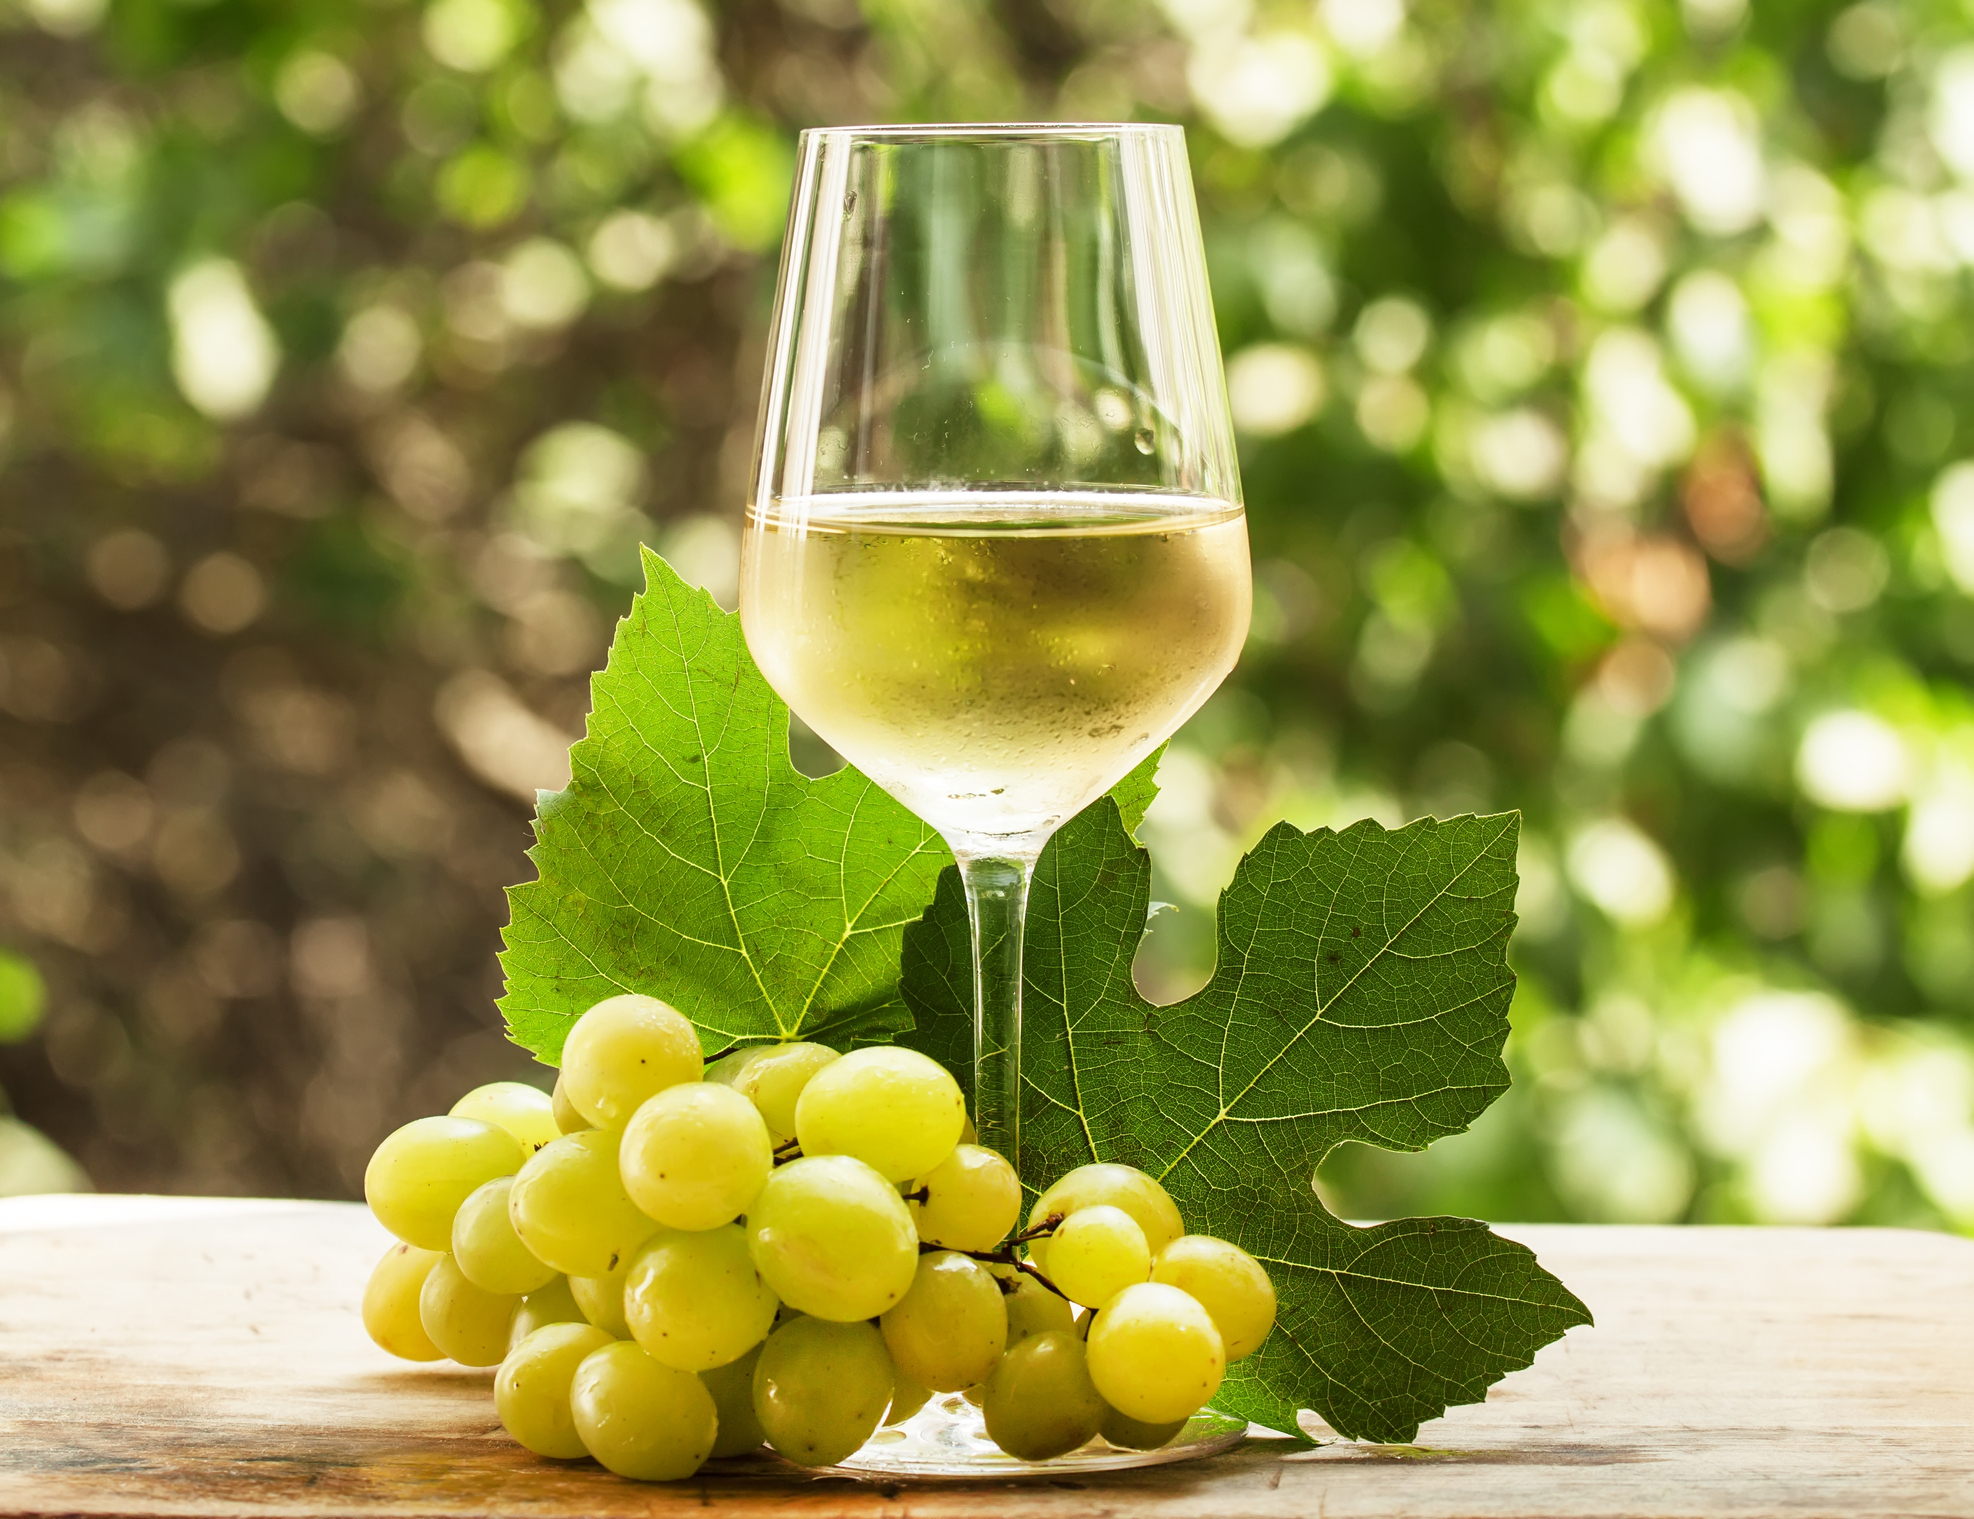 Dia Mundial do vinho Chardonnay foi celebrado em 27 de maio